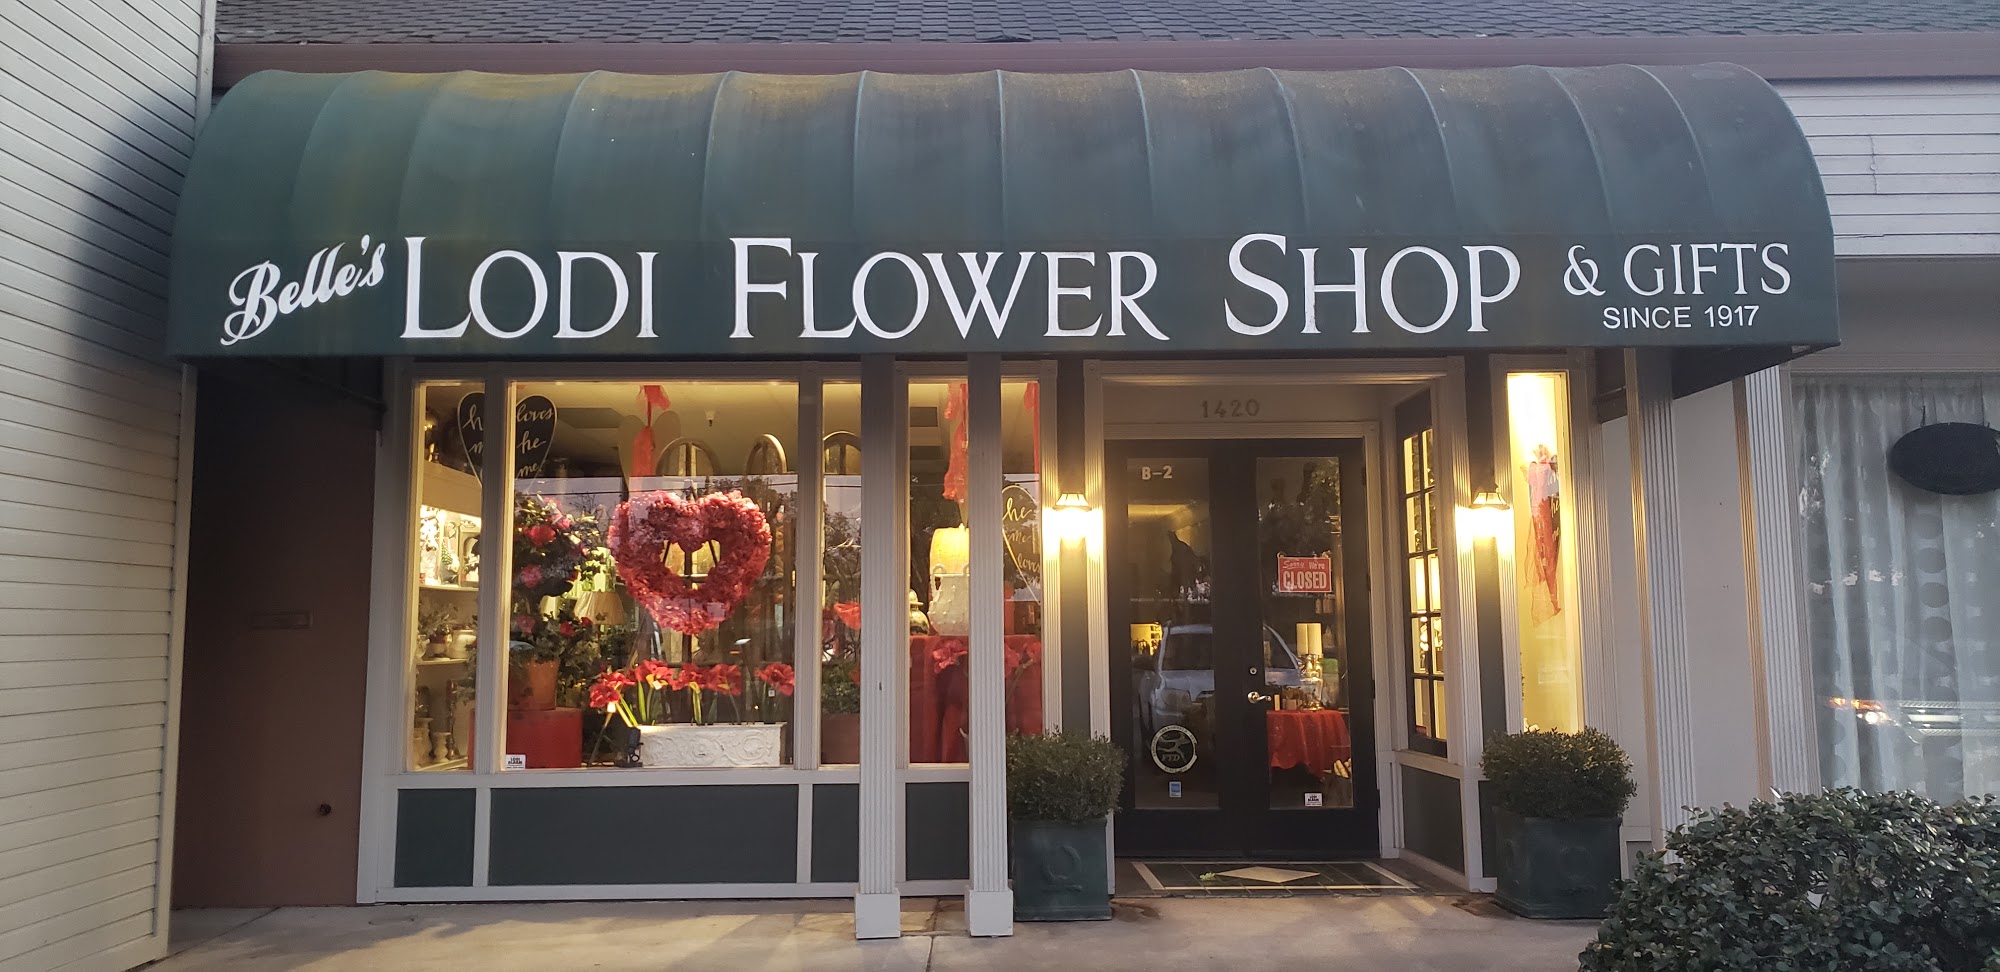 Belle’s Lodi Flower Shop